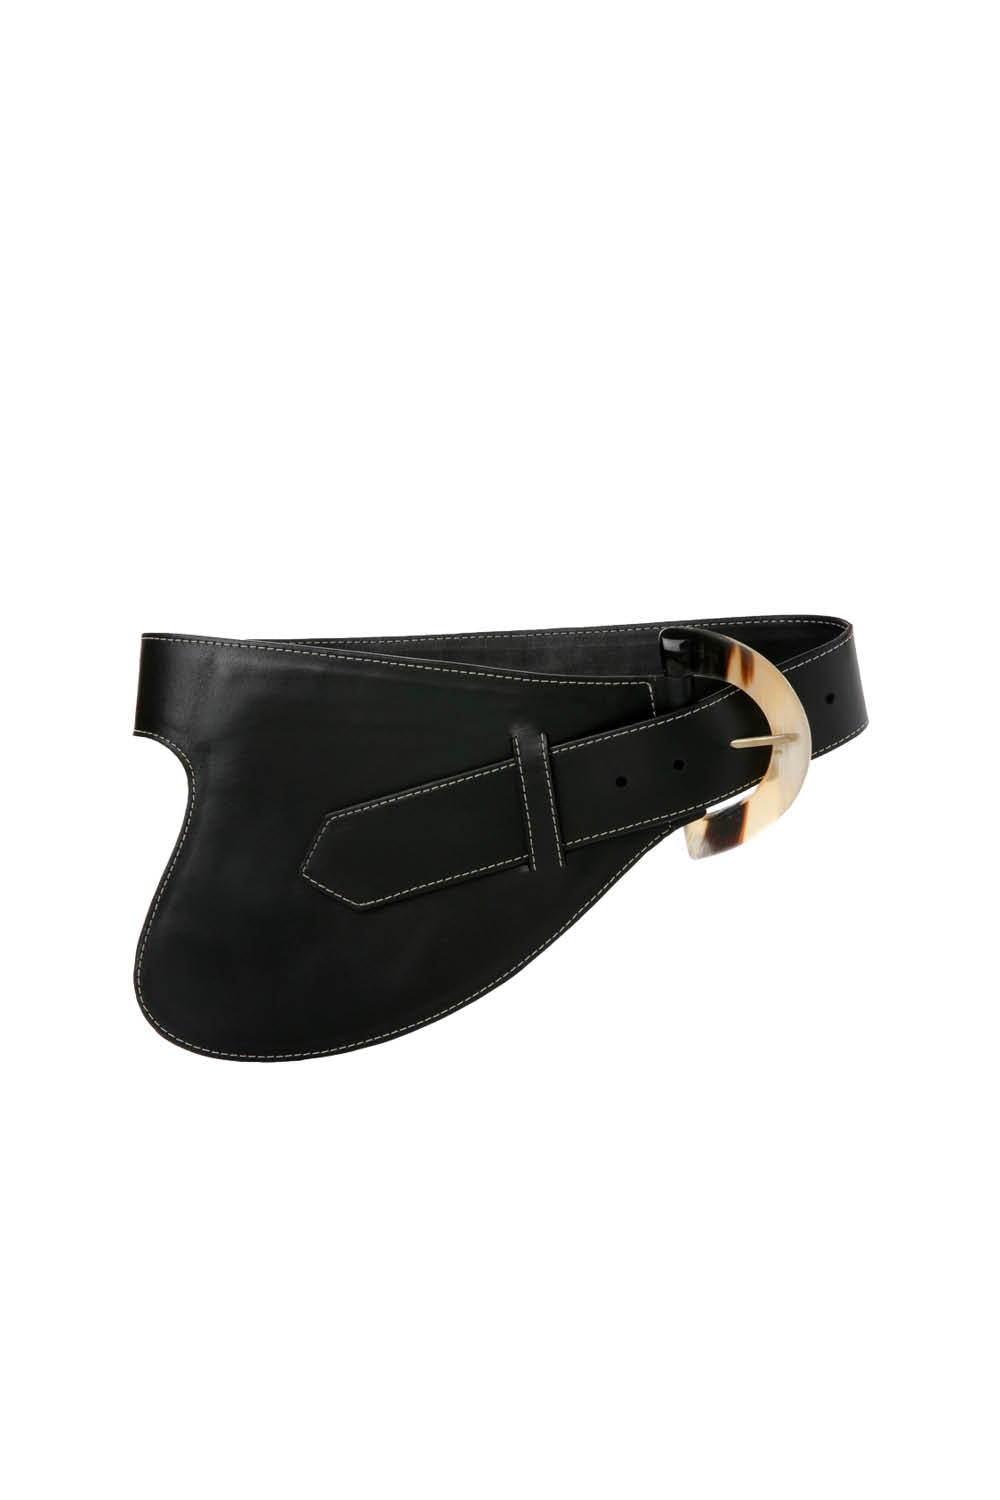 La Jefa Belt in Black Leather